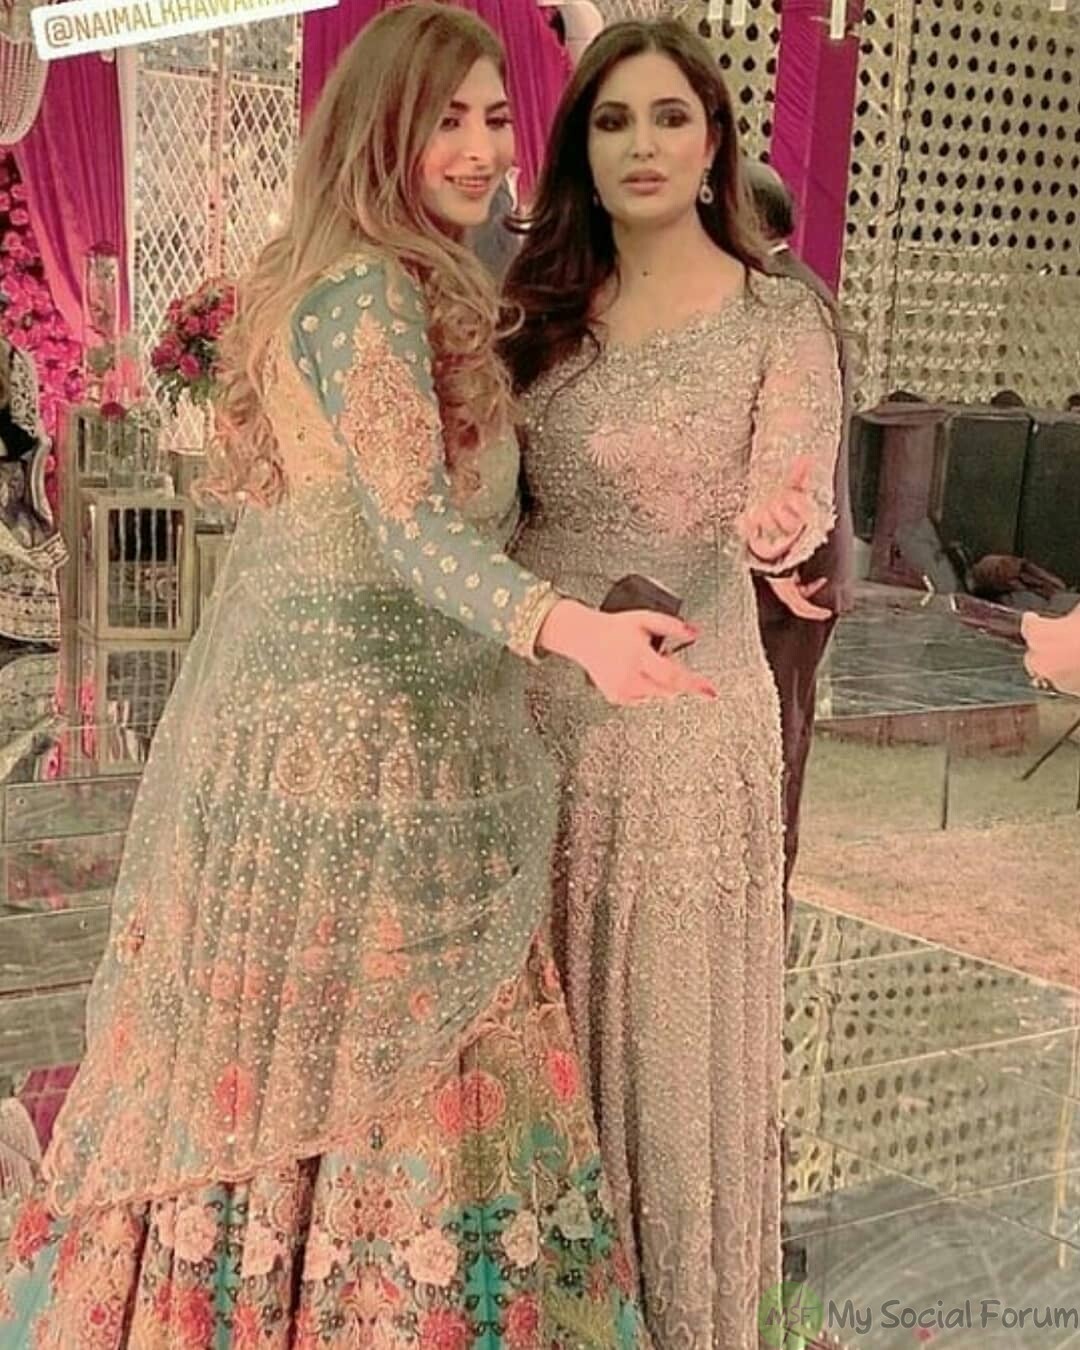 Naimal Khawar Sister Fiza Khawar Wedding